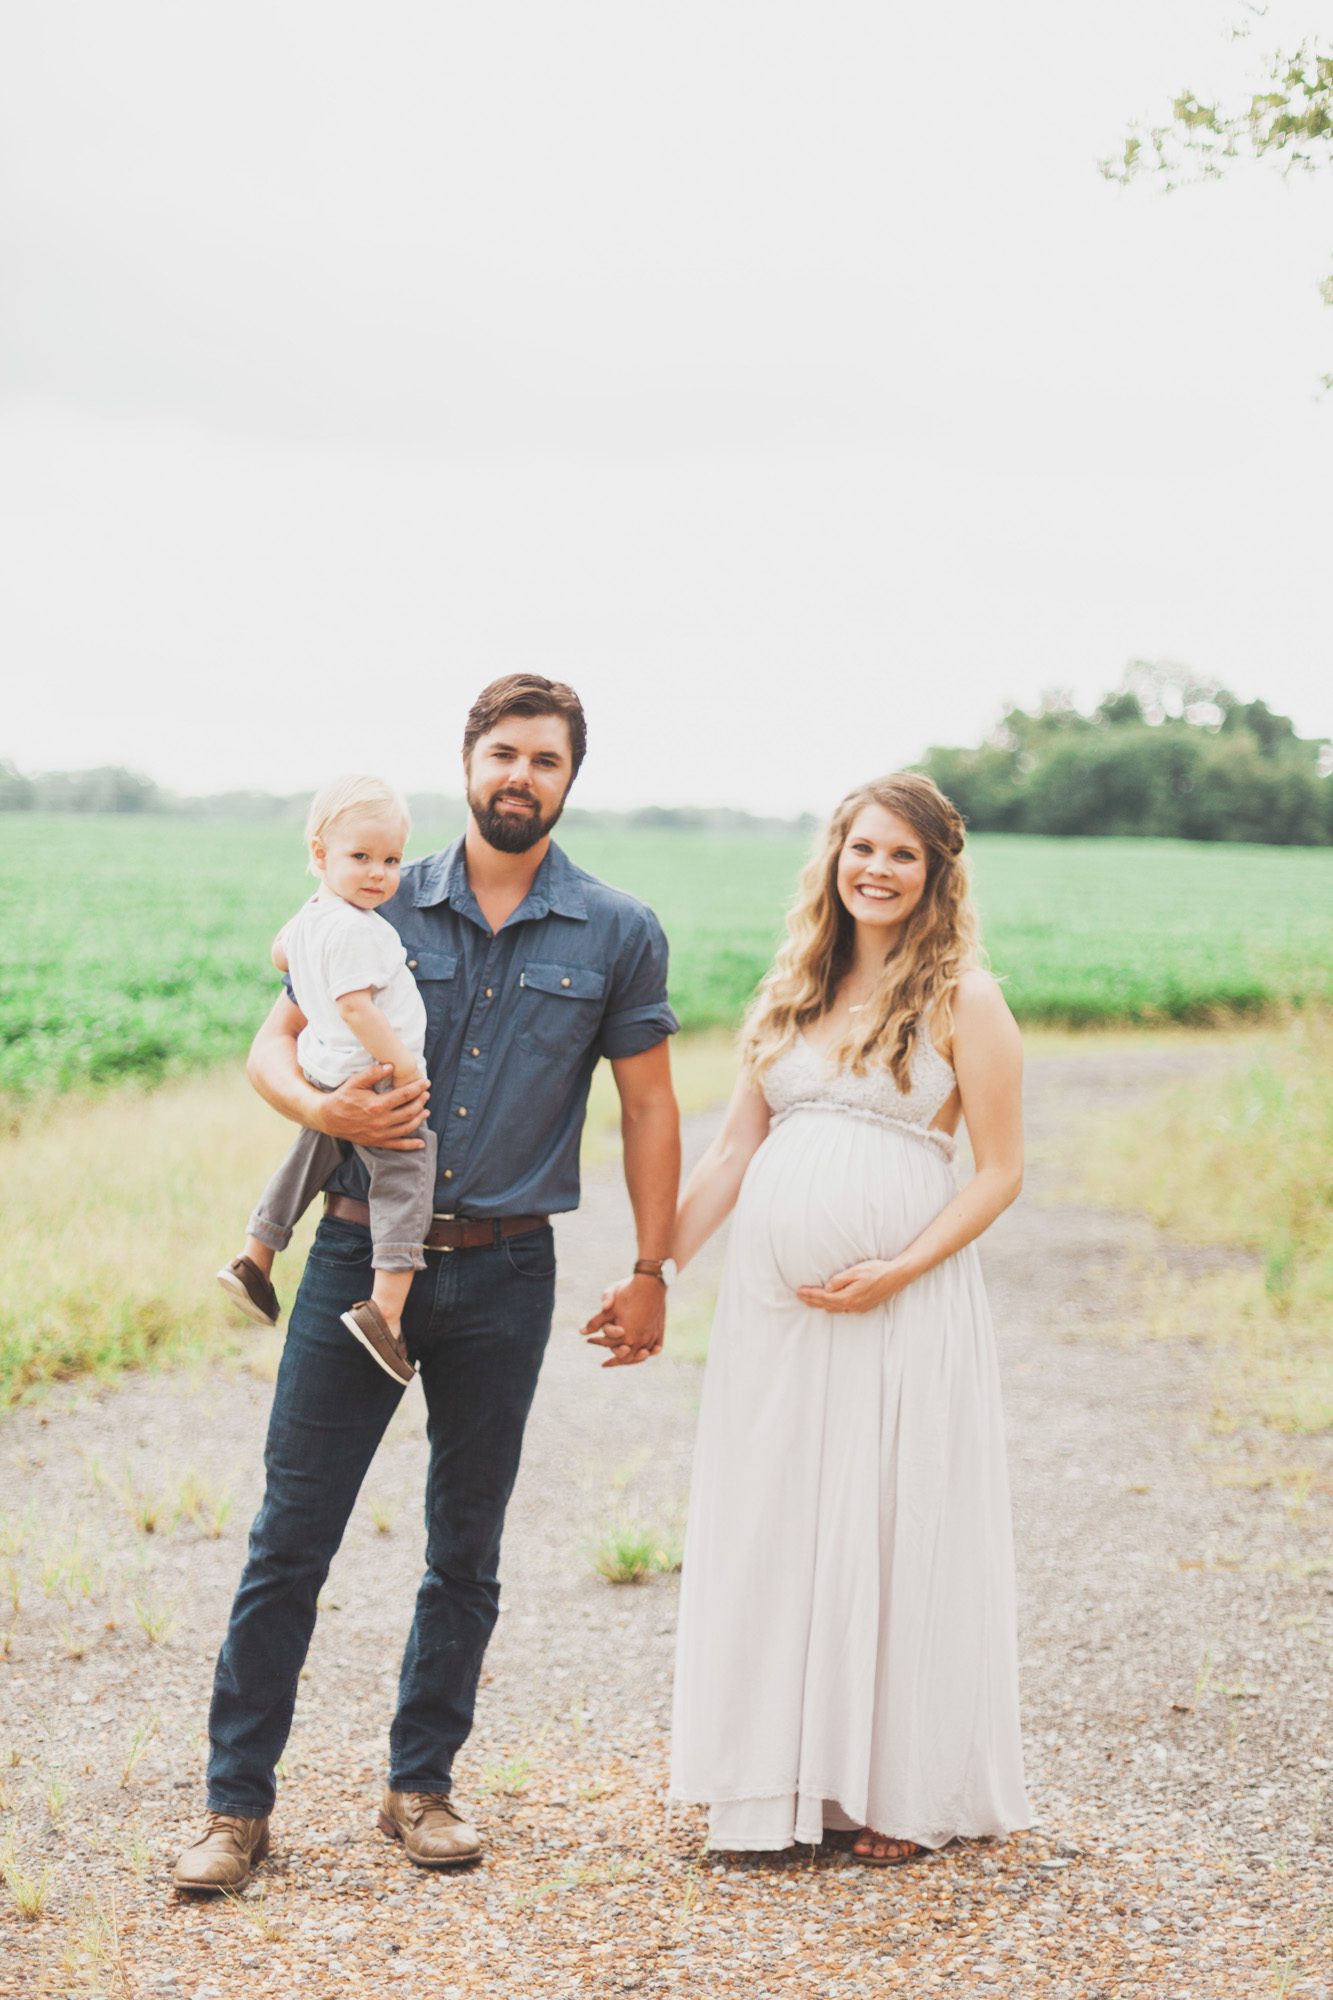 Maternity photos with family at farm